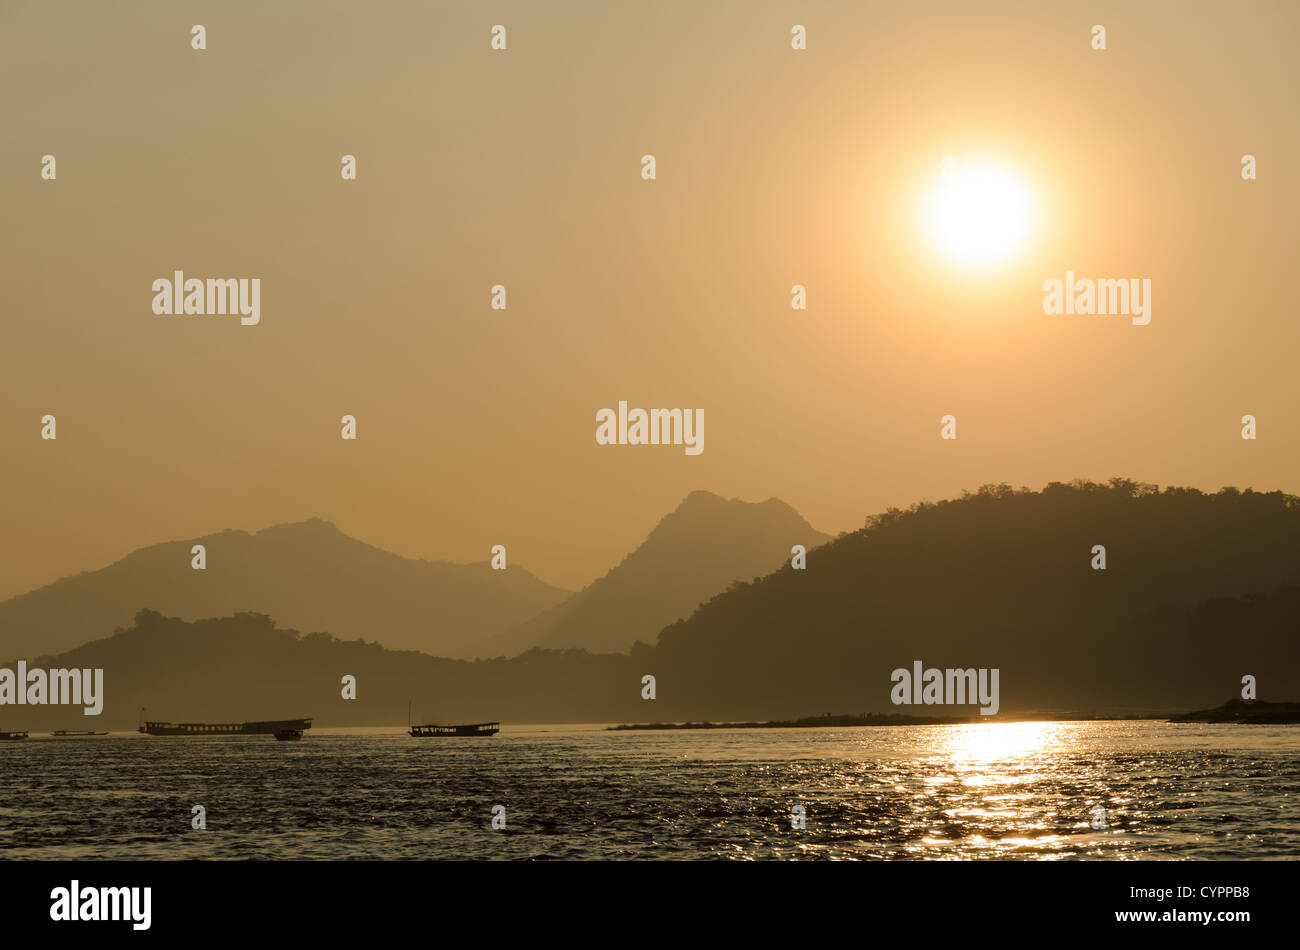 LUANG PRABANG, Laos - Coucher de soleil sur le Mékong près de Luang Prabang, au centre du Laos, avec moutnains et bateaux qui se profile. Banque D'Images